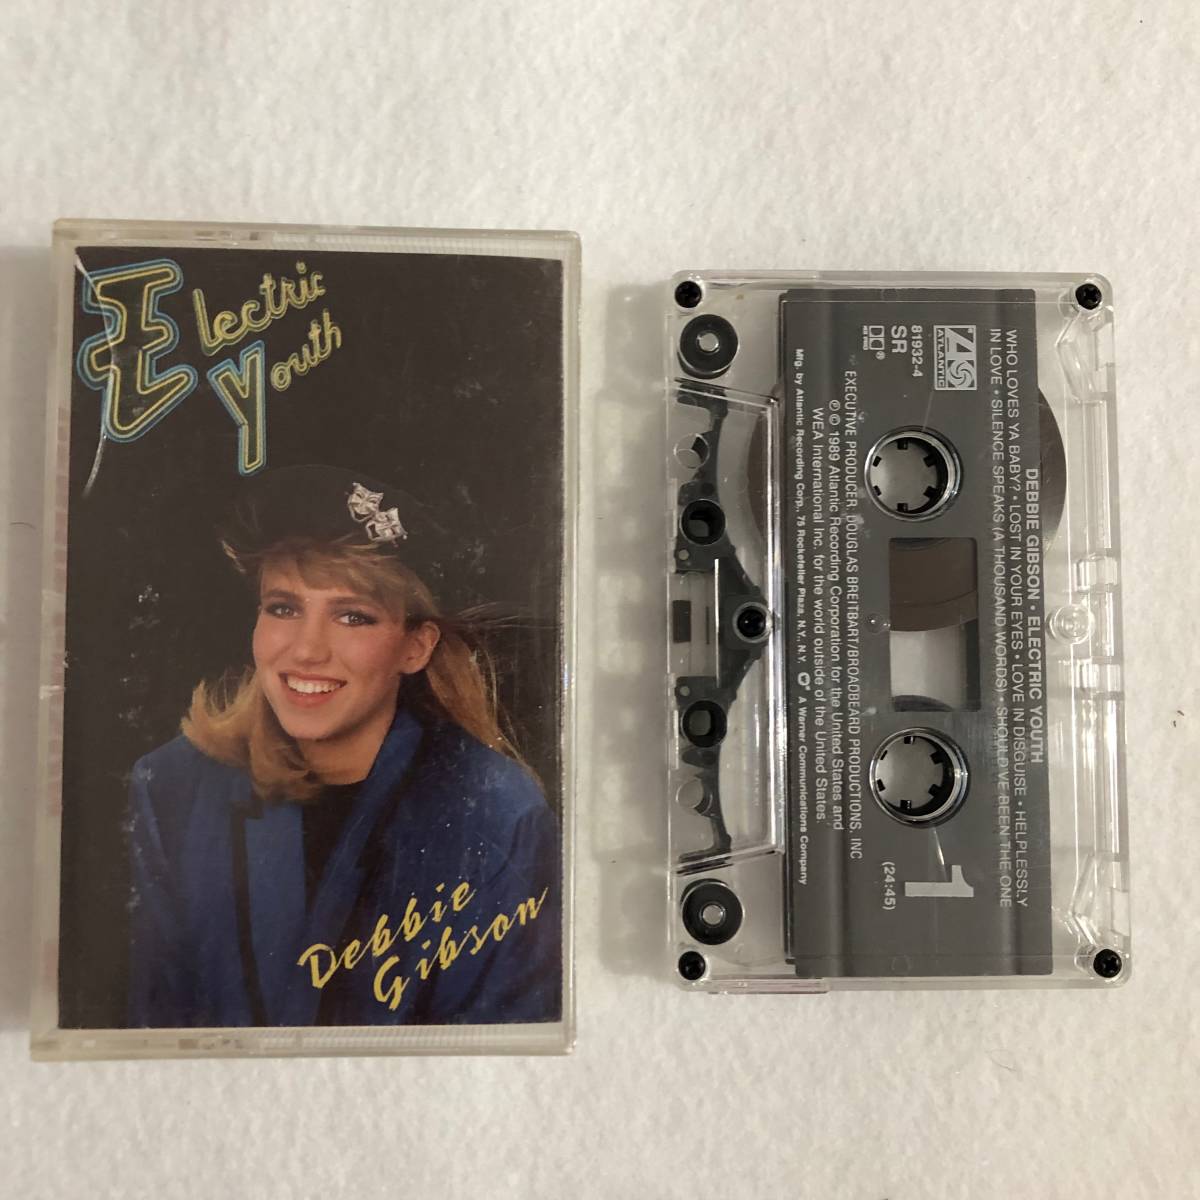 中古カセット Debbie Gibson Electric Youth デビー・ギブソン エレクトリック・ユース Atlantic 7 81932-4 US盤 の画像1